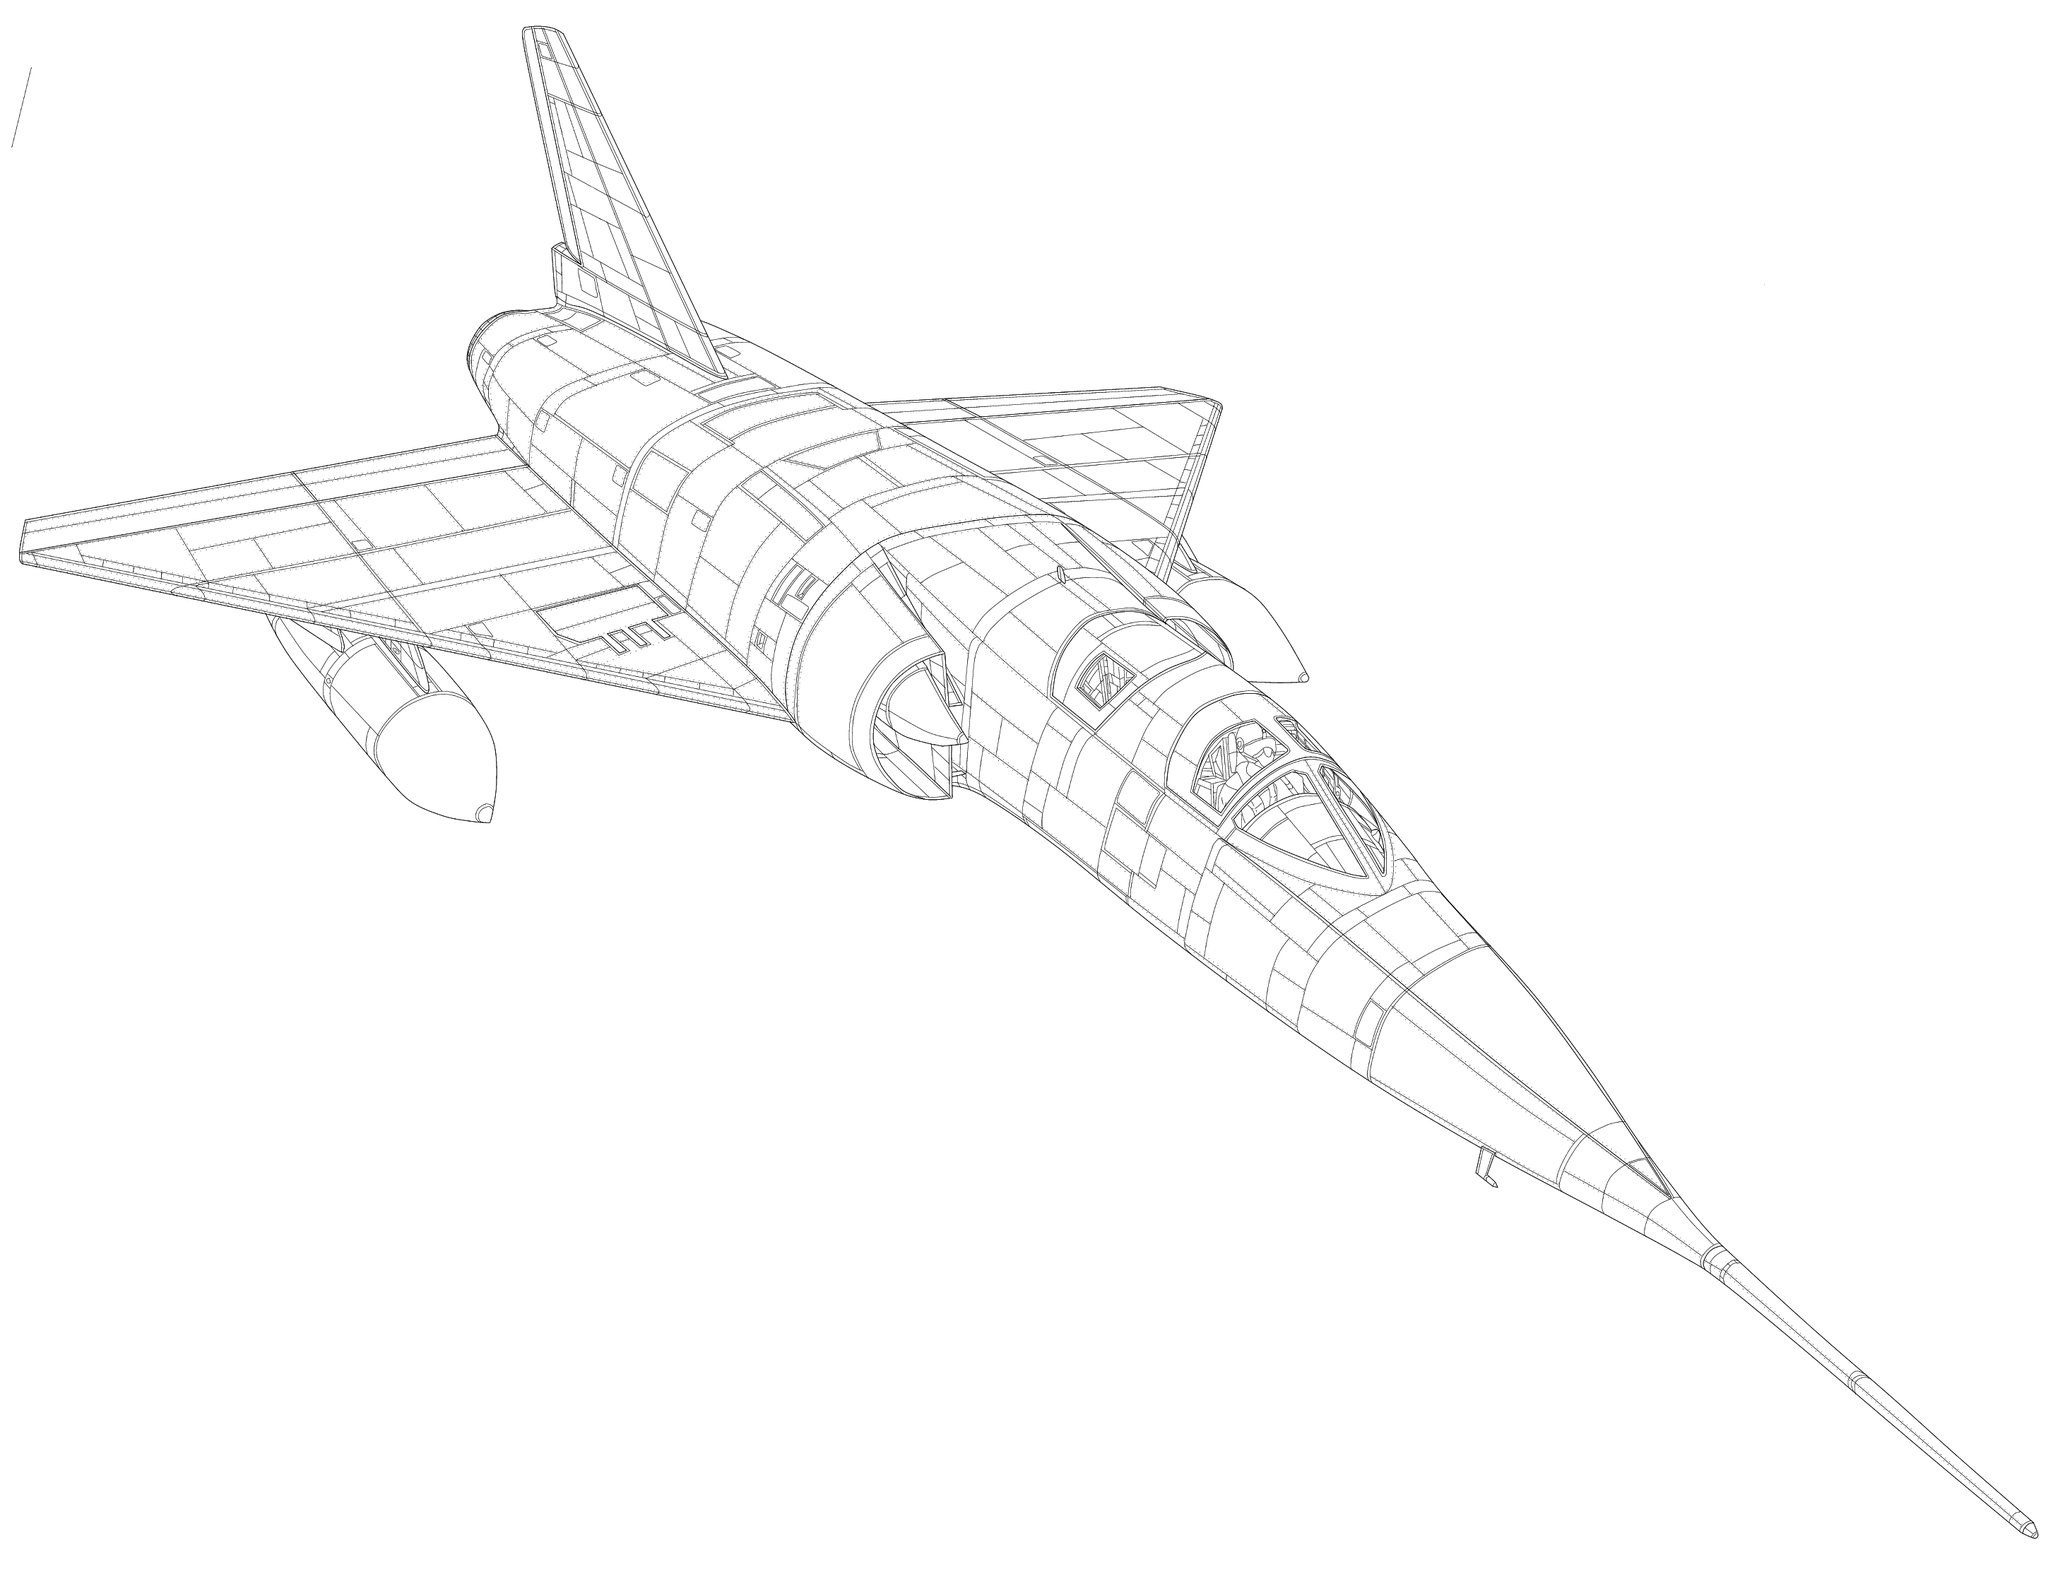 ダイハツ GAMD Mirage IV ミラージュIVジェット爆撃機 超音速戦略爆撃